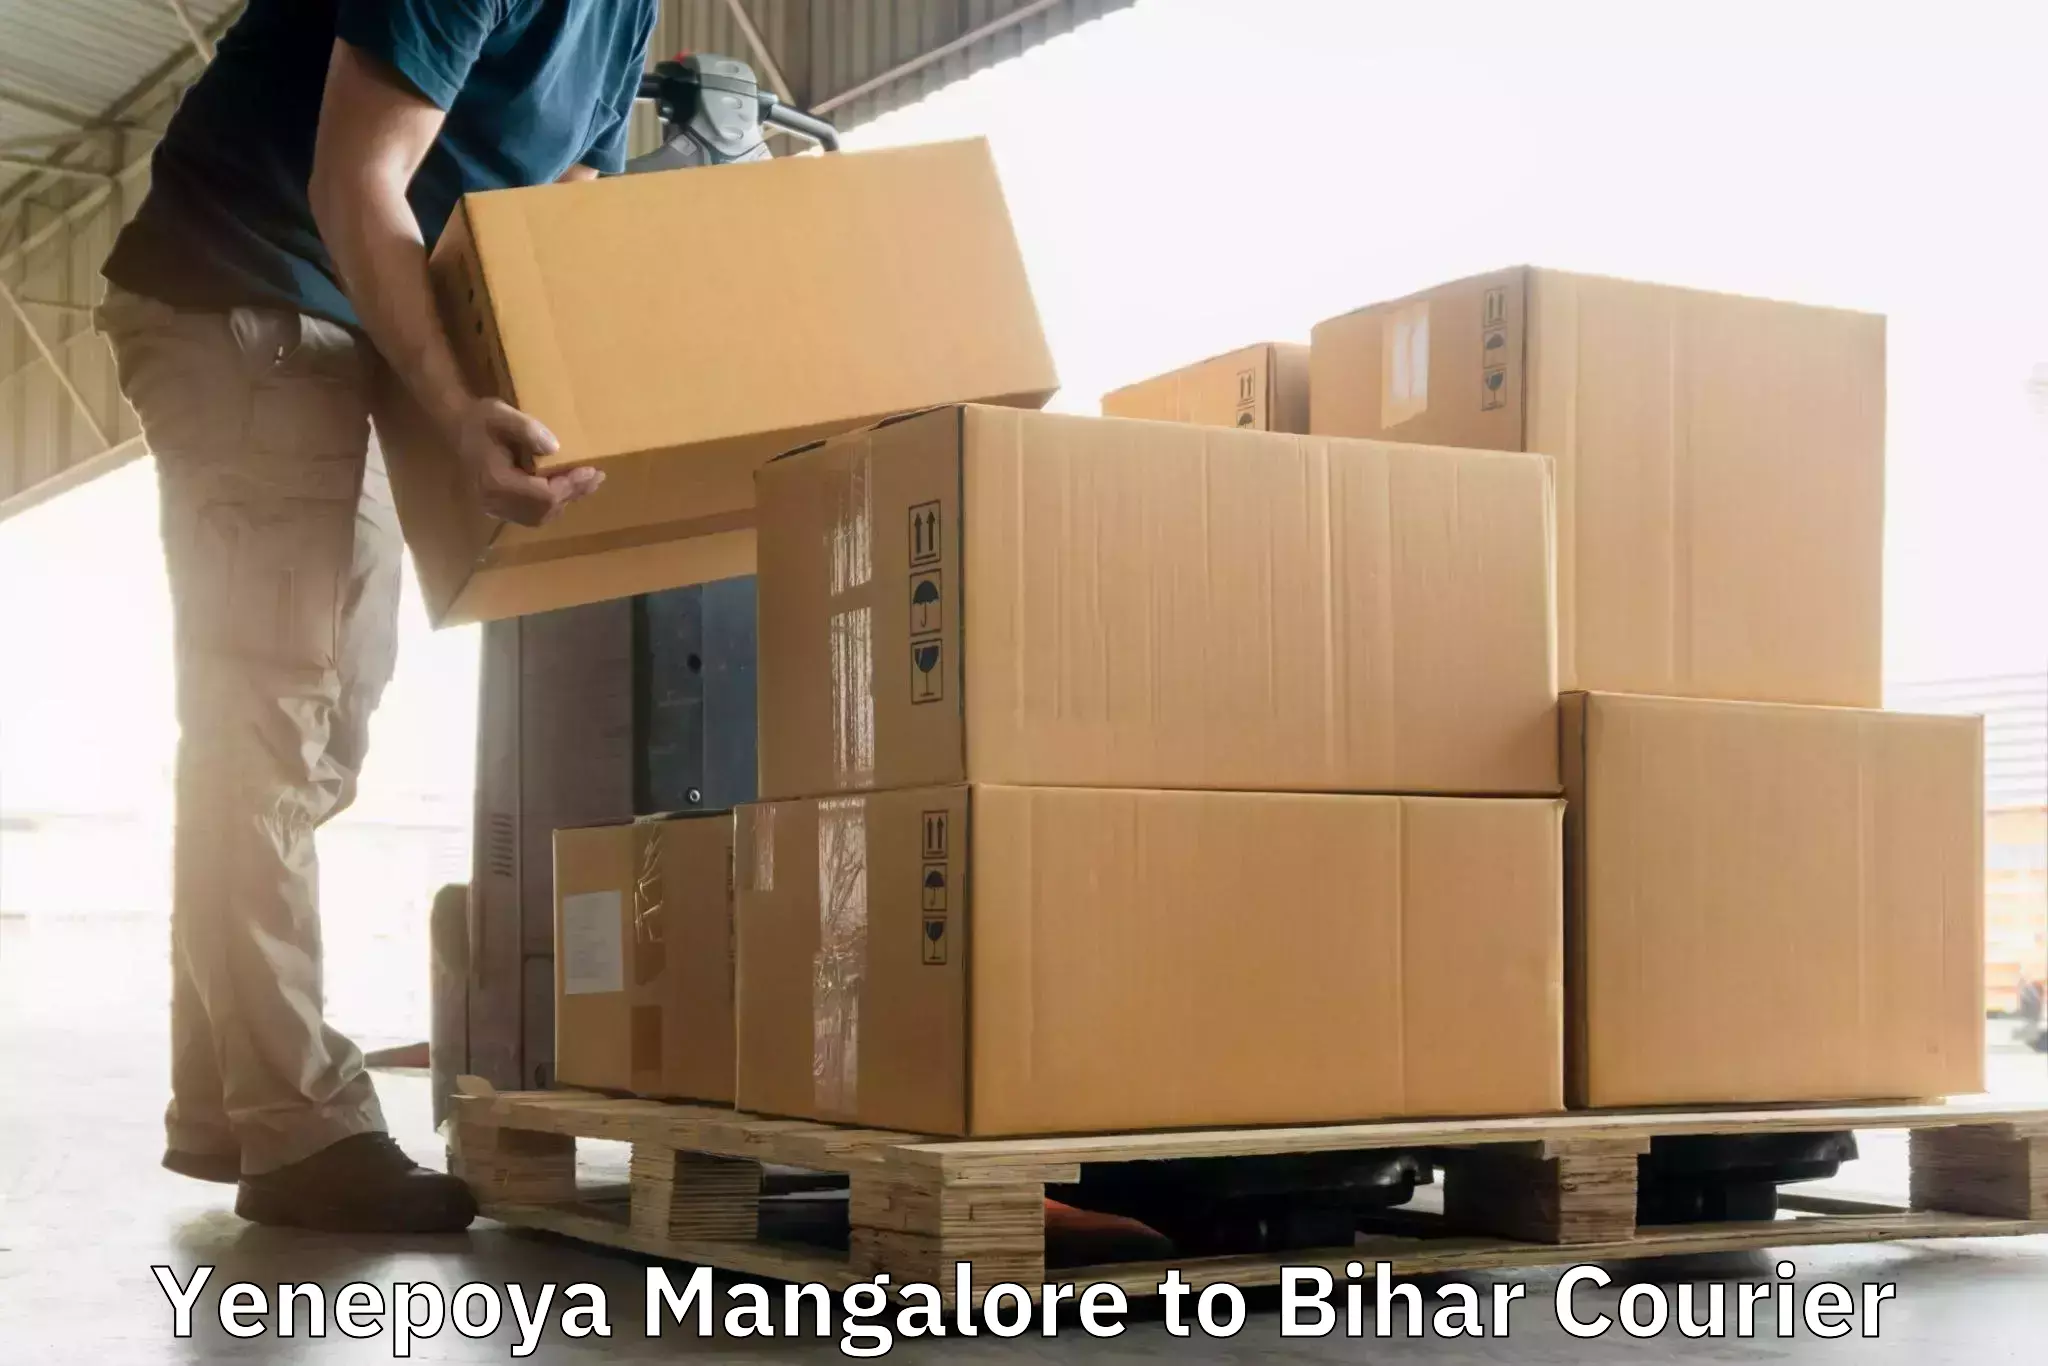 Global shipping networks Yenepoya Mangalore to Maheshkhunt